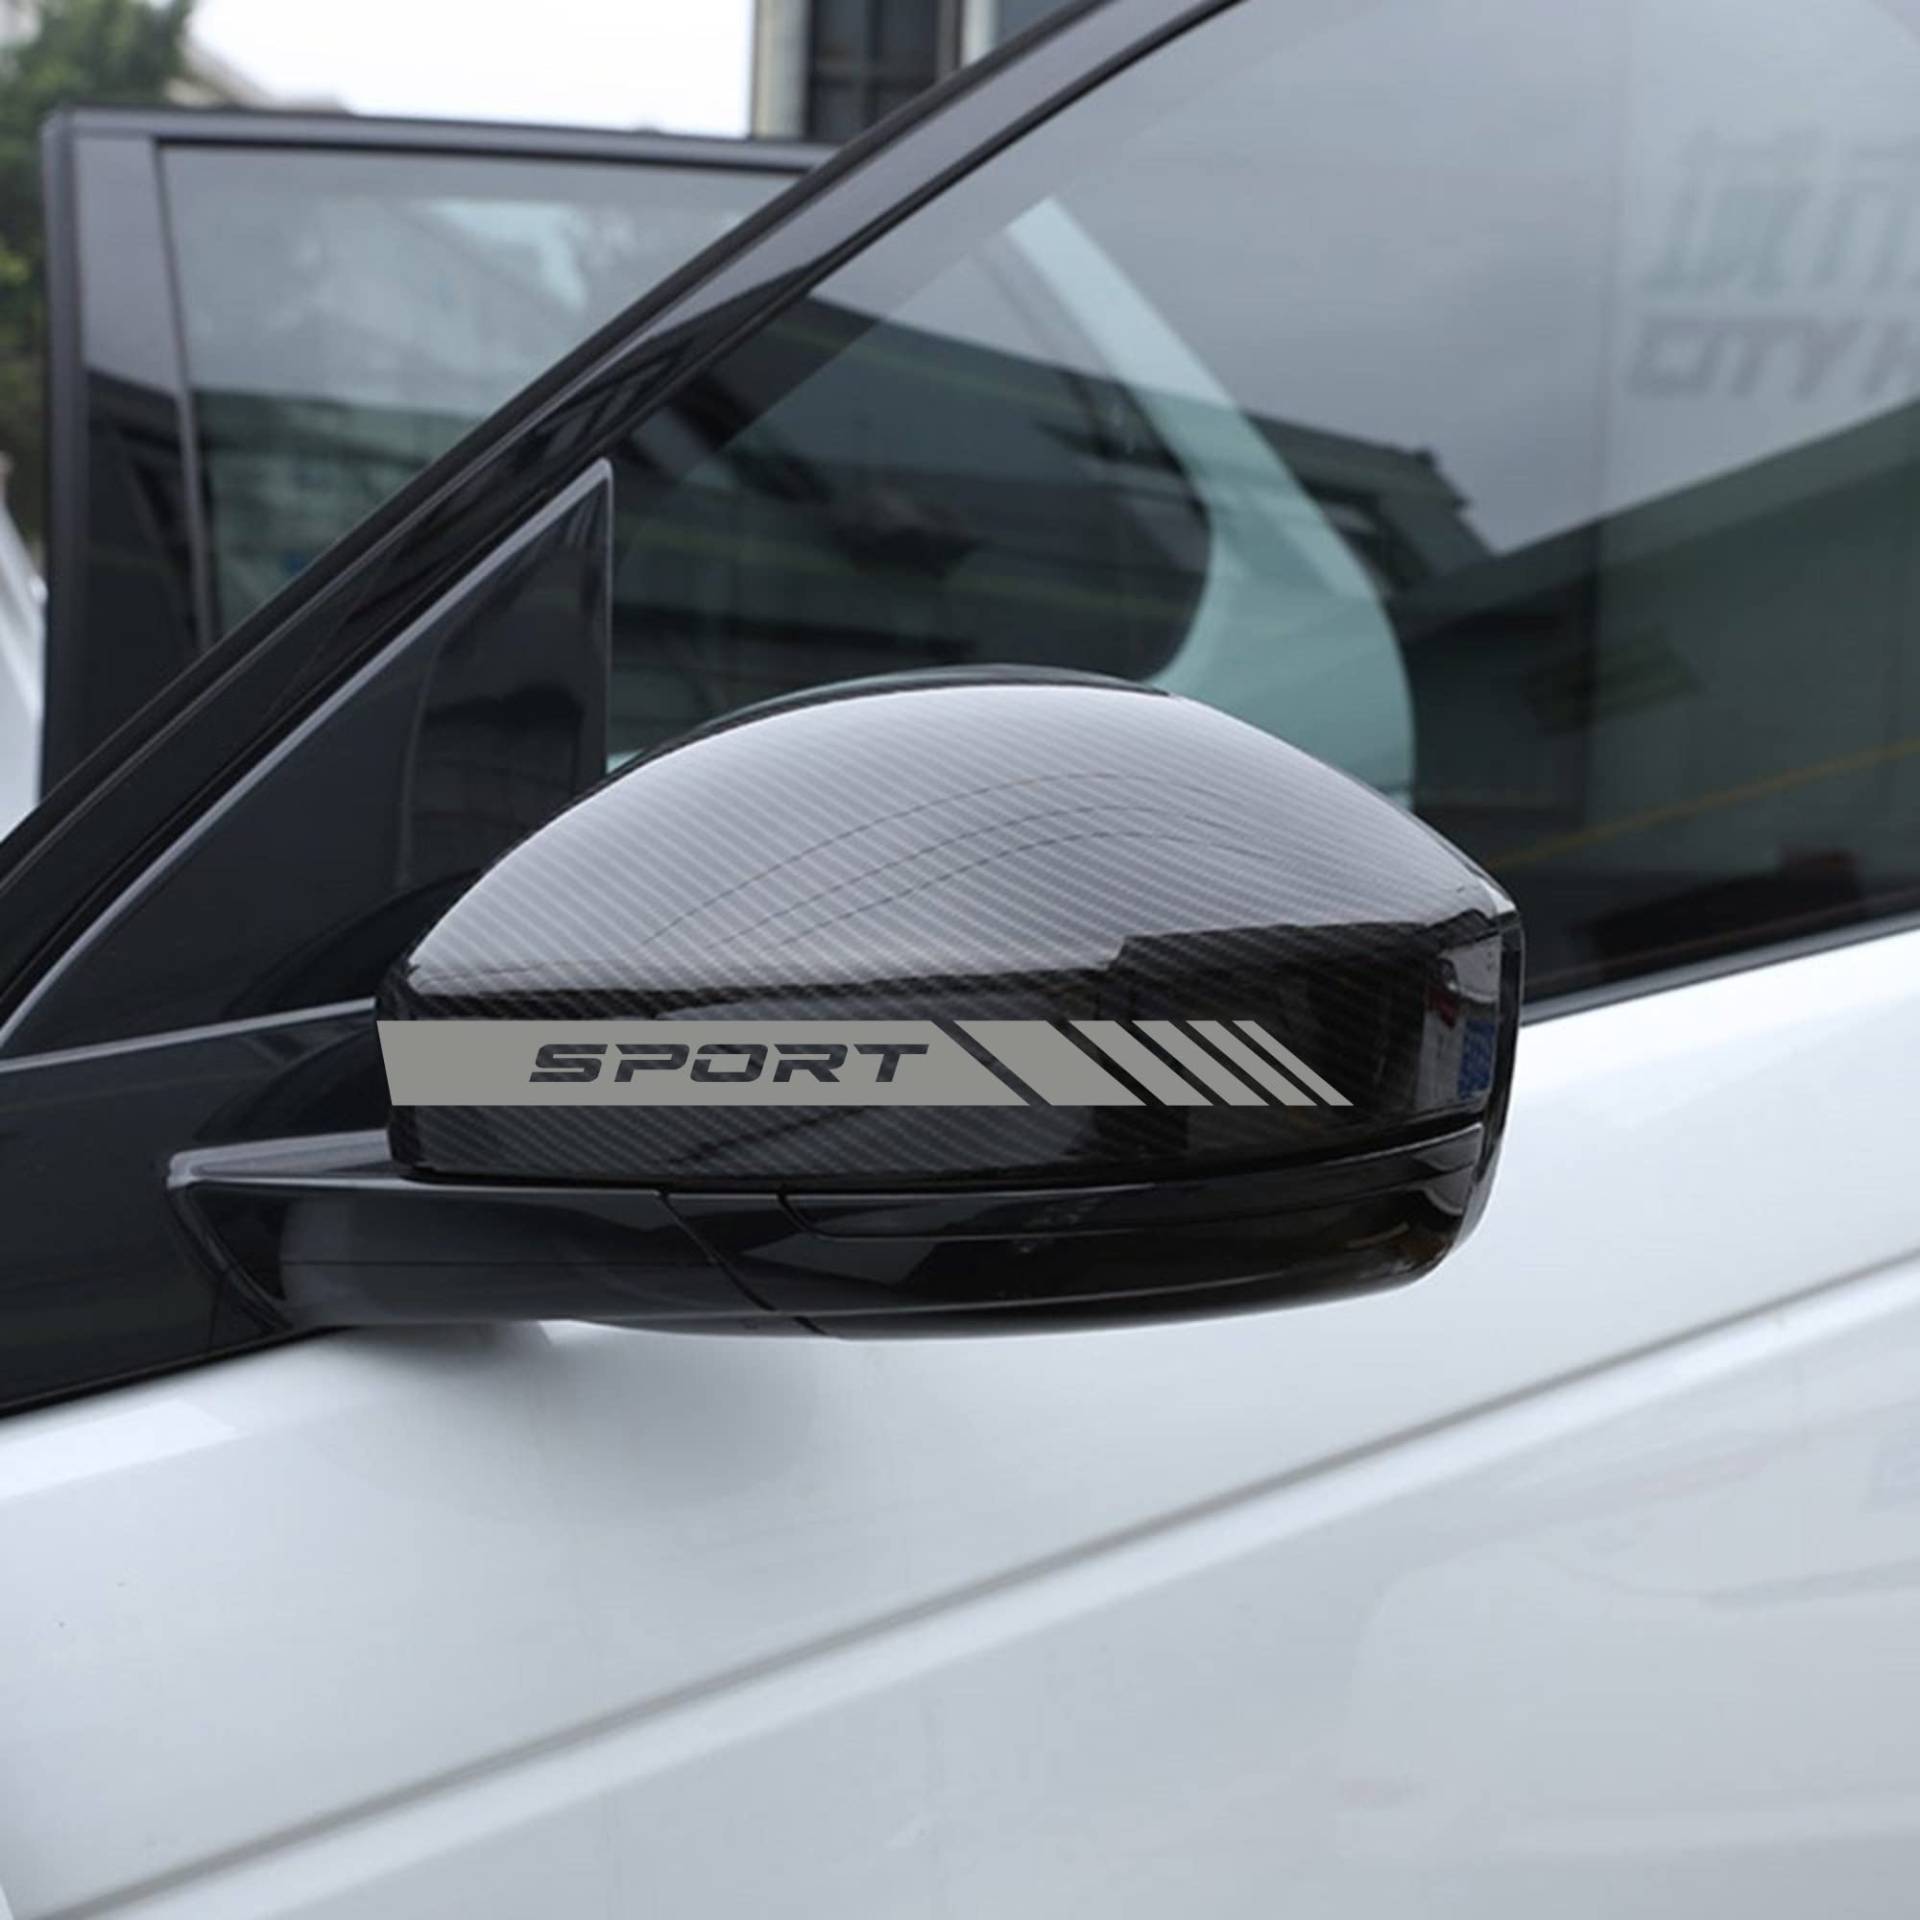 AUTODOMY Rückspiegel Aufkleber Stickers Auto mit Streifen Design Stripes Tuning Packet mit 6 Einheiten mit unterschiedlichen Breiten Sportdesign für das Auto (Silber) von AUTODOMY